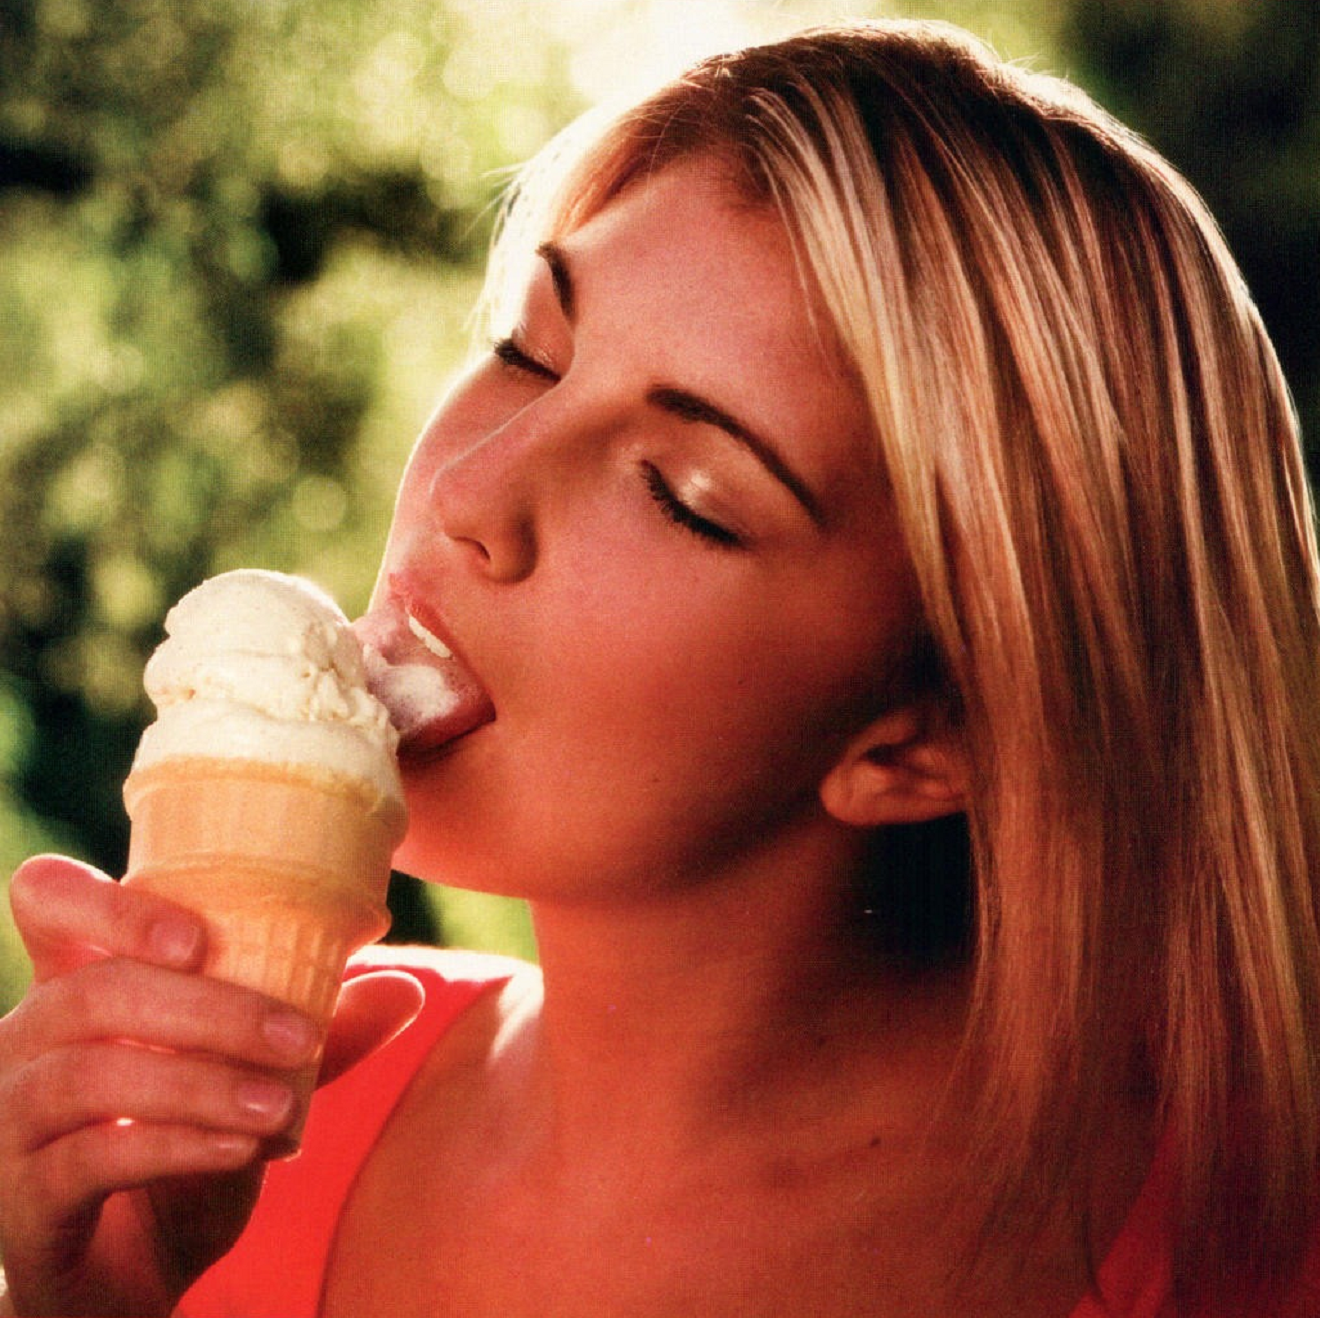 Облизывает мороженое. Девушка ест мороженое. Девушка лижет мороженое. Девушка кушает мороженое.